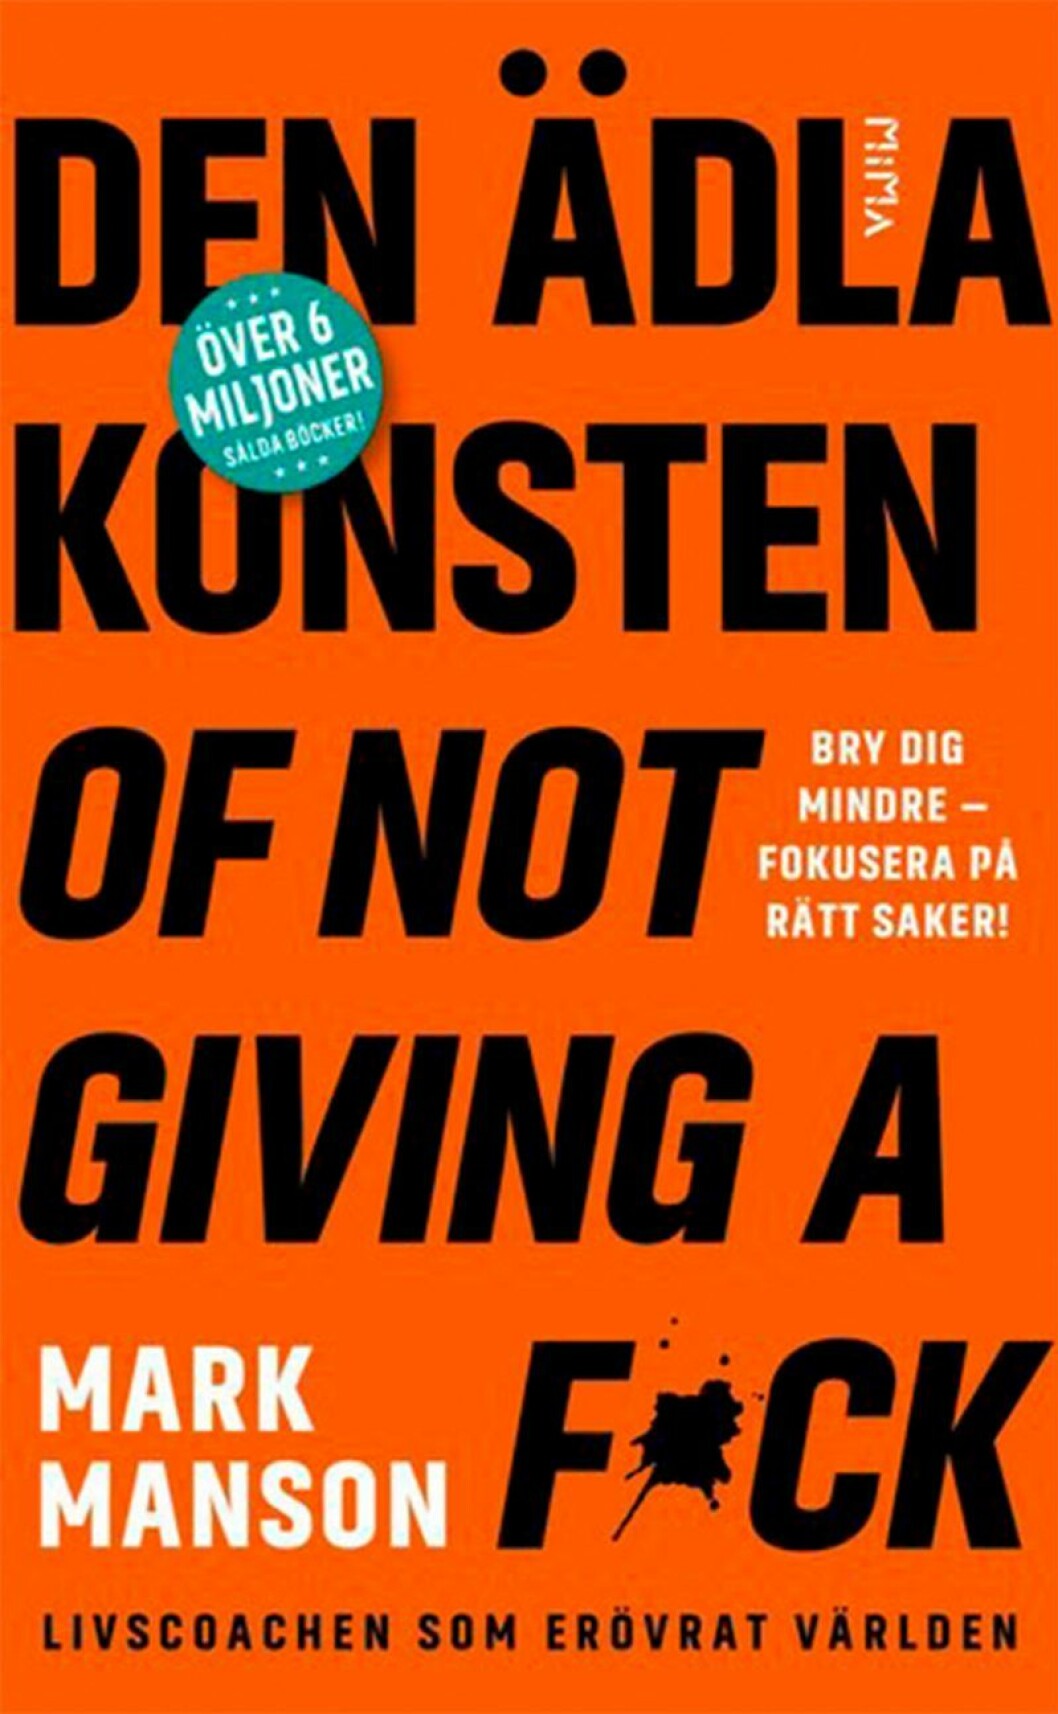 Bokomslag till Den ädla konsten of not giving a f*ck, boktiteln i stora bokstäver.